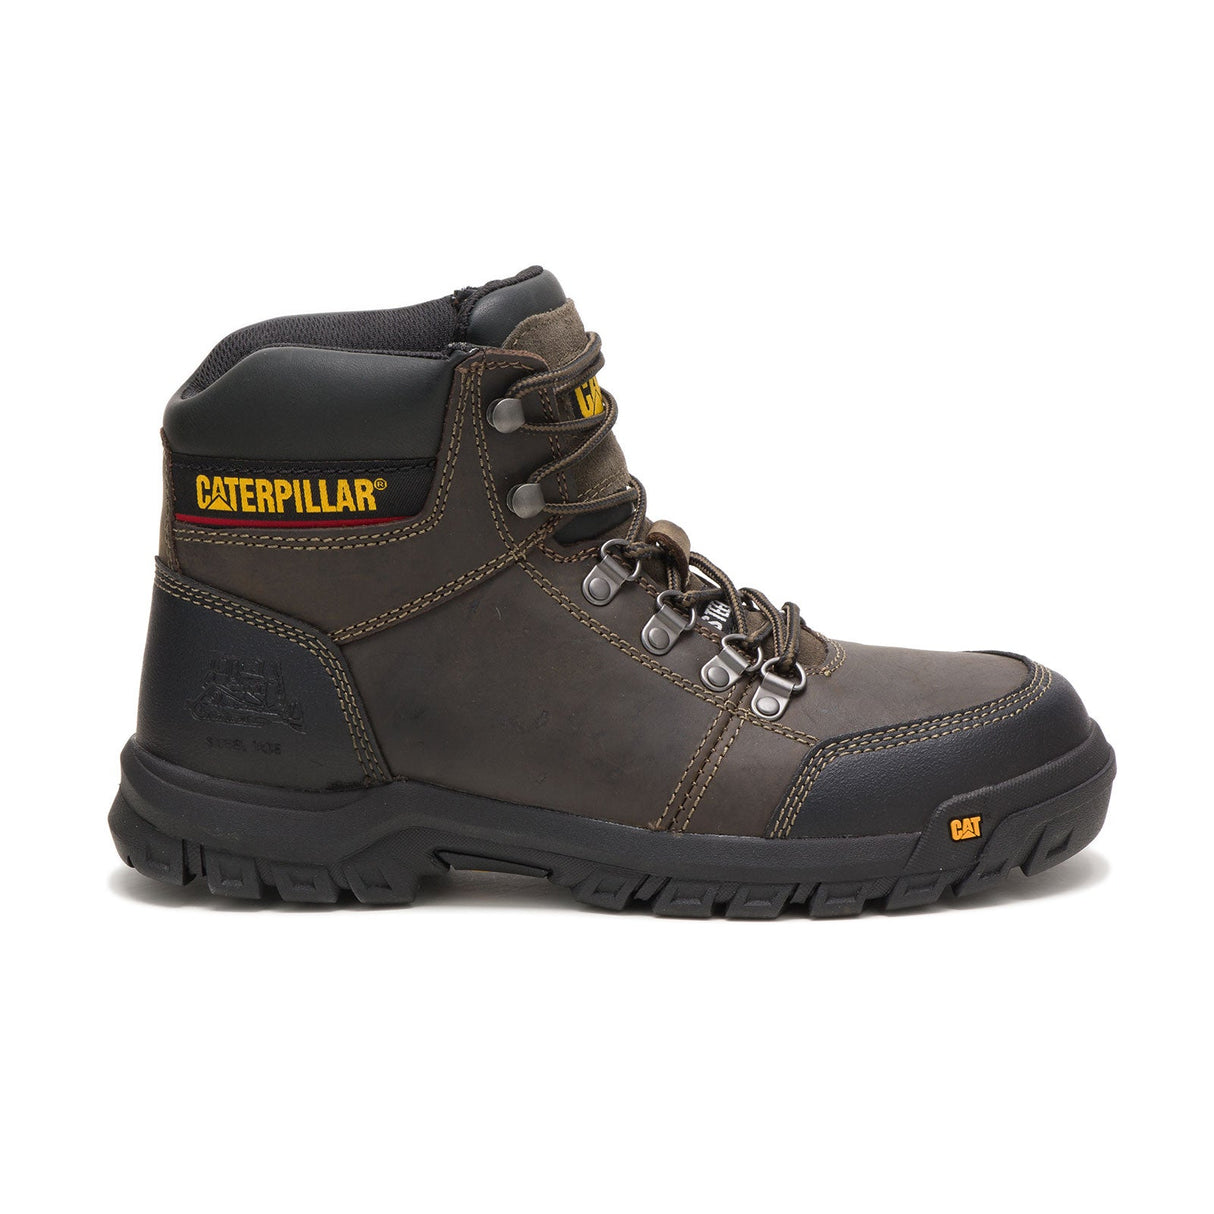 Caterpillar Outline Men's Steel-Toe Work Boots P90802-1